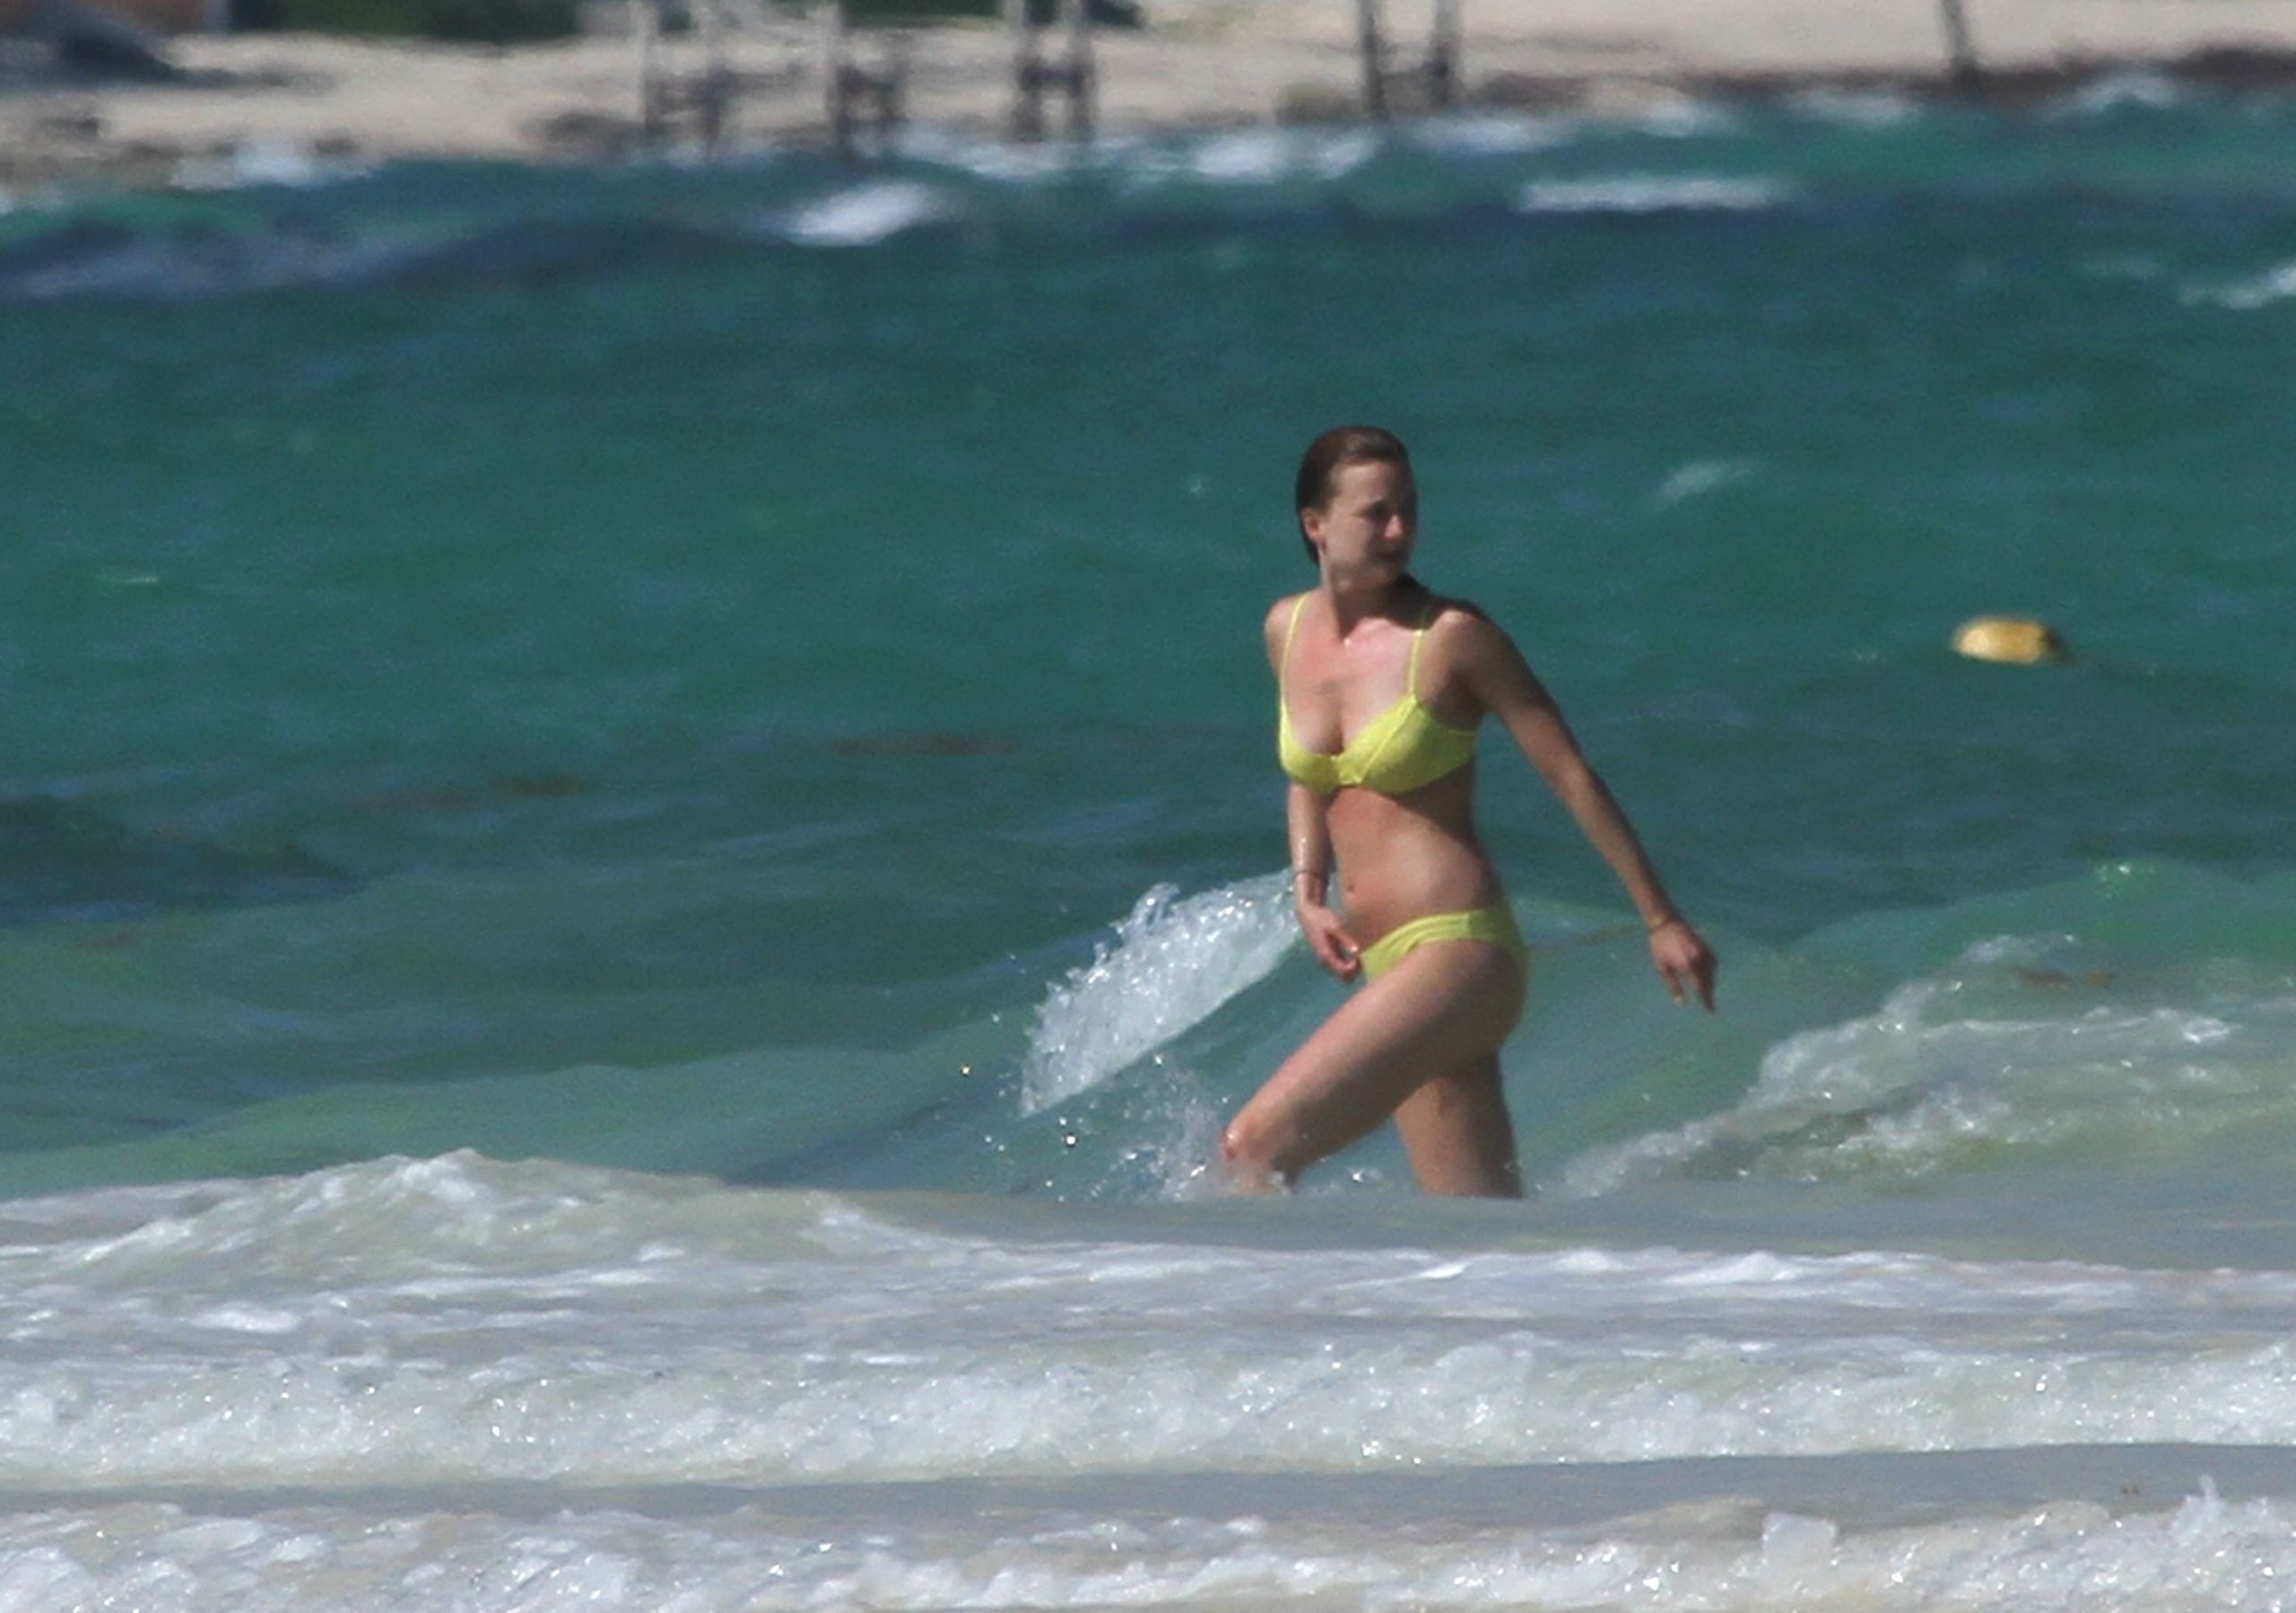 Beautiful Emily VanCamp Showing Her Body in a Revealing Bikini Get-Up